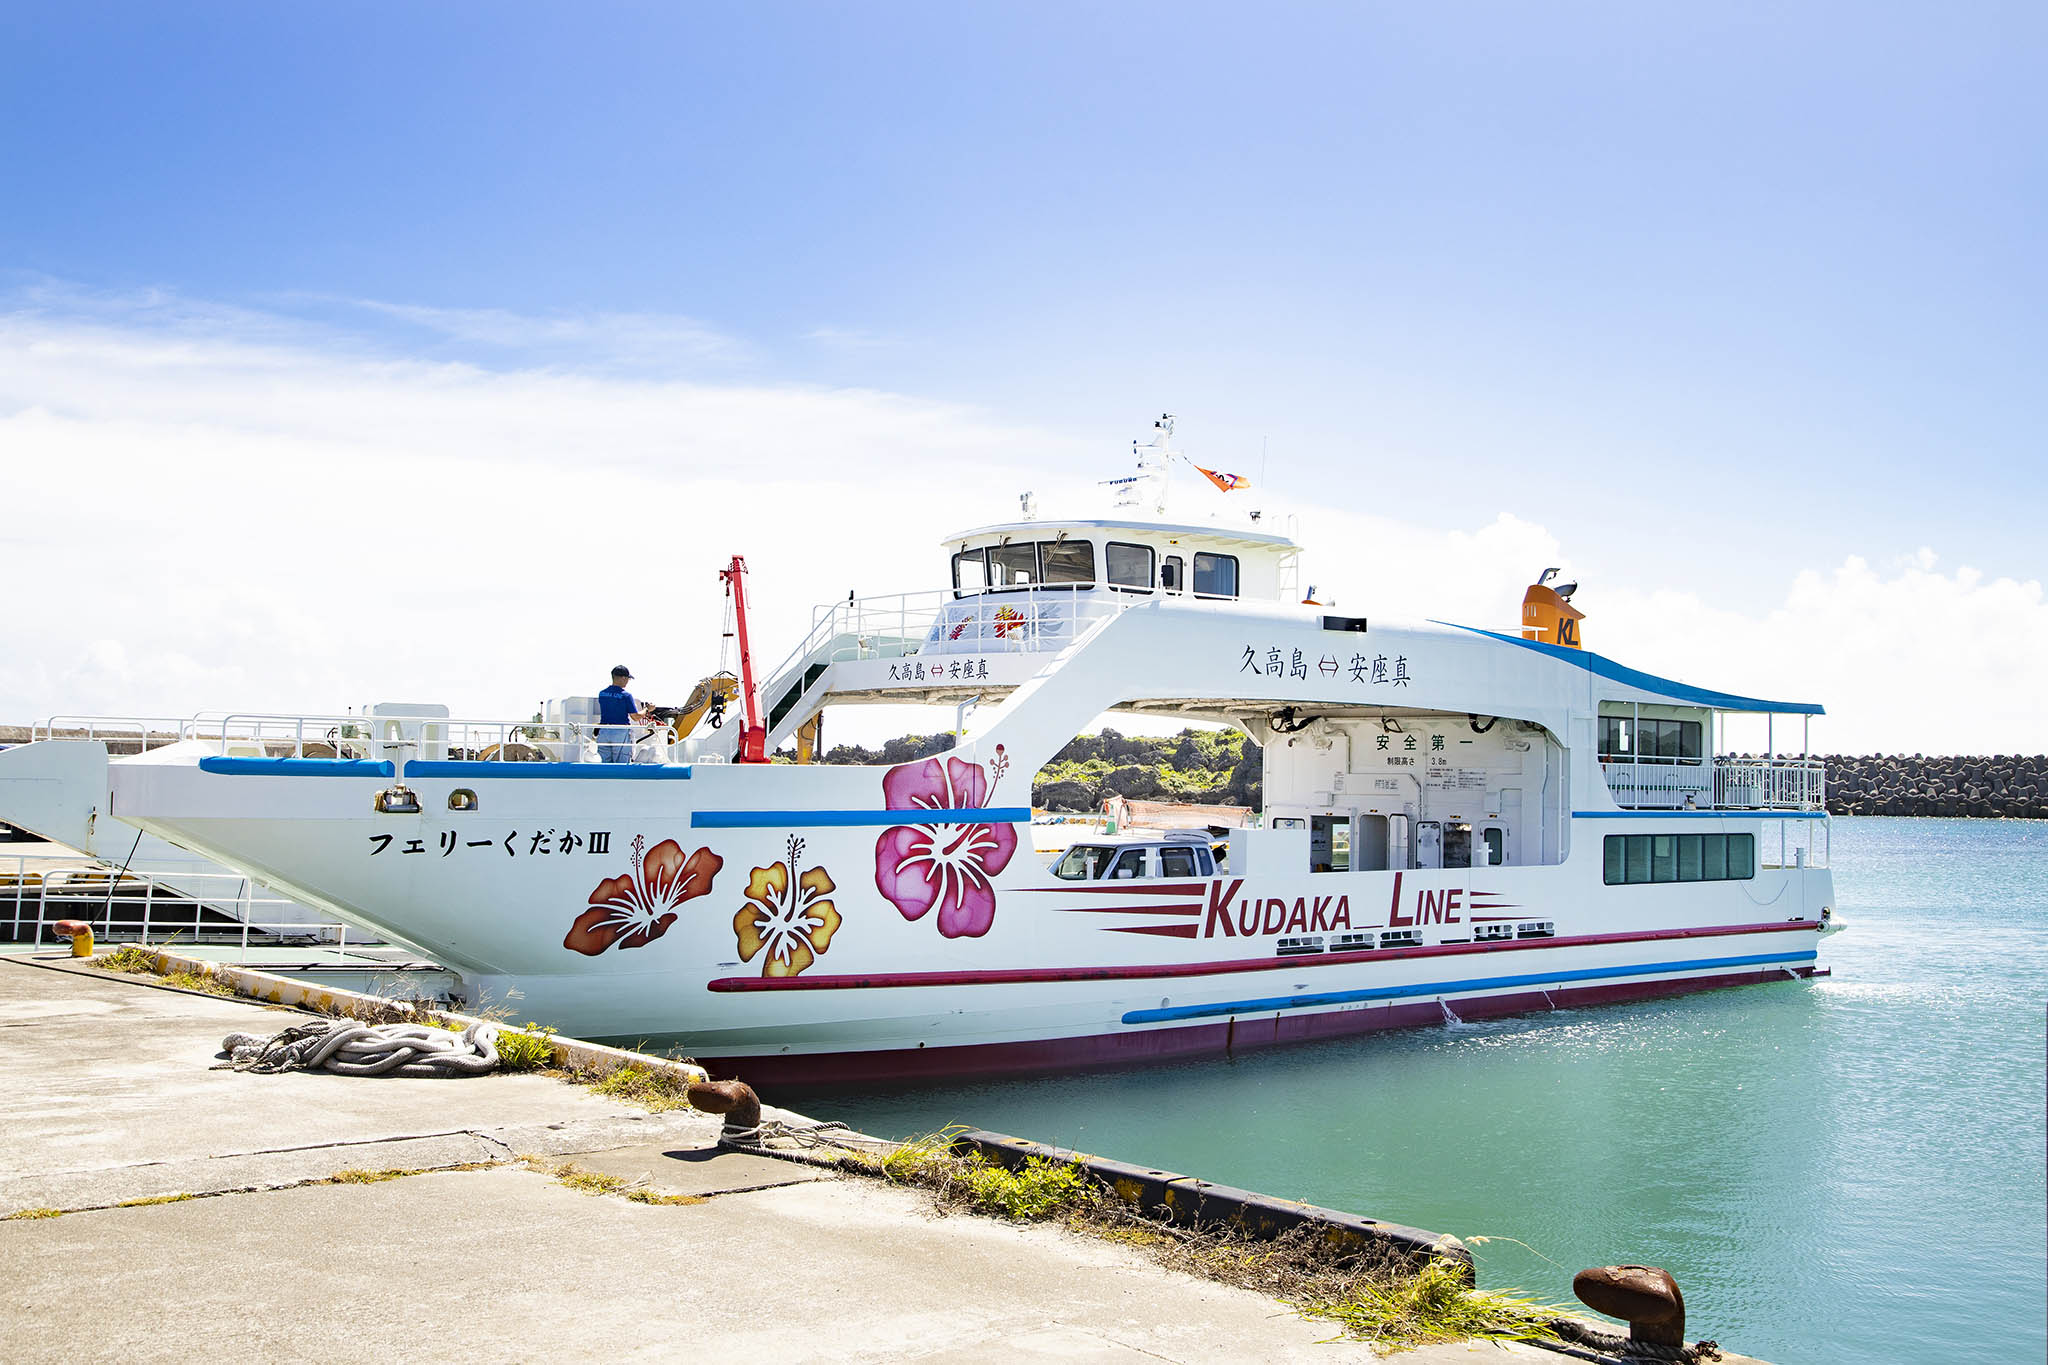 okinawa remote island ferry